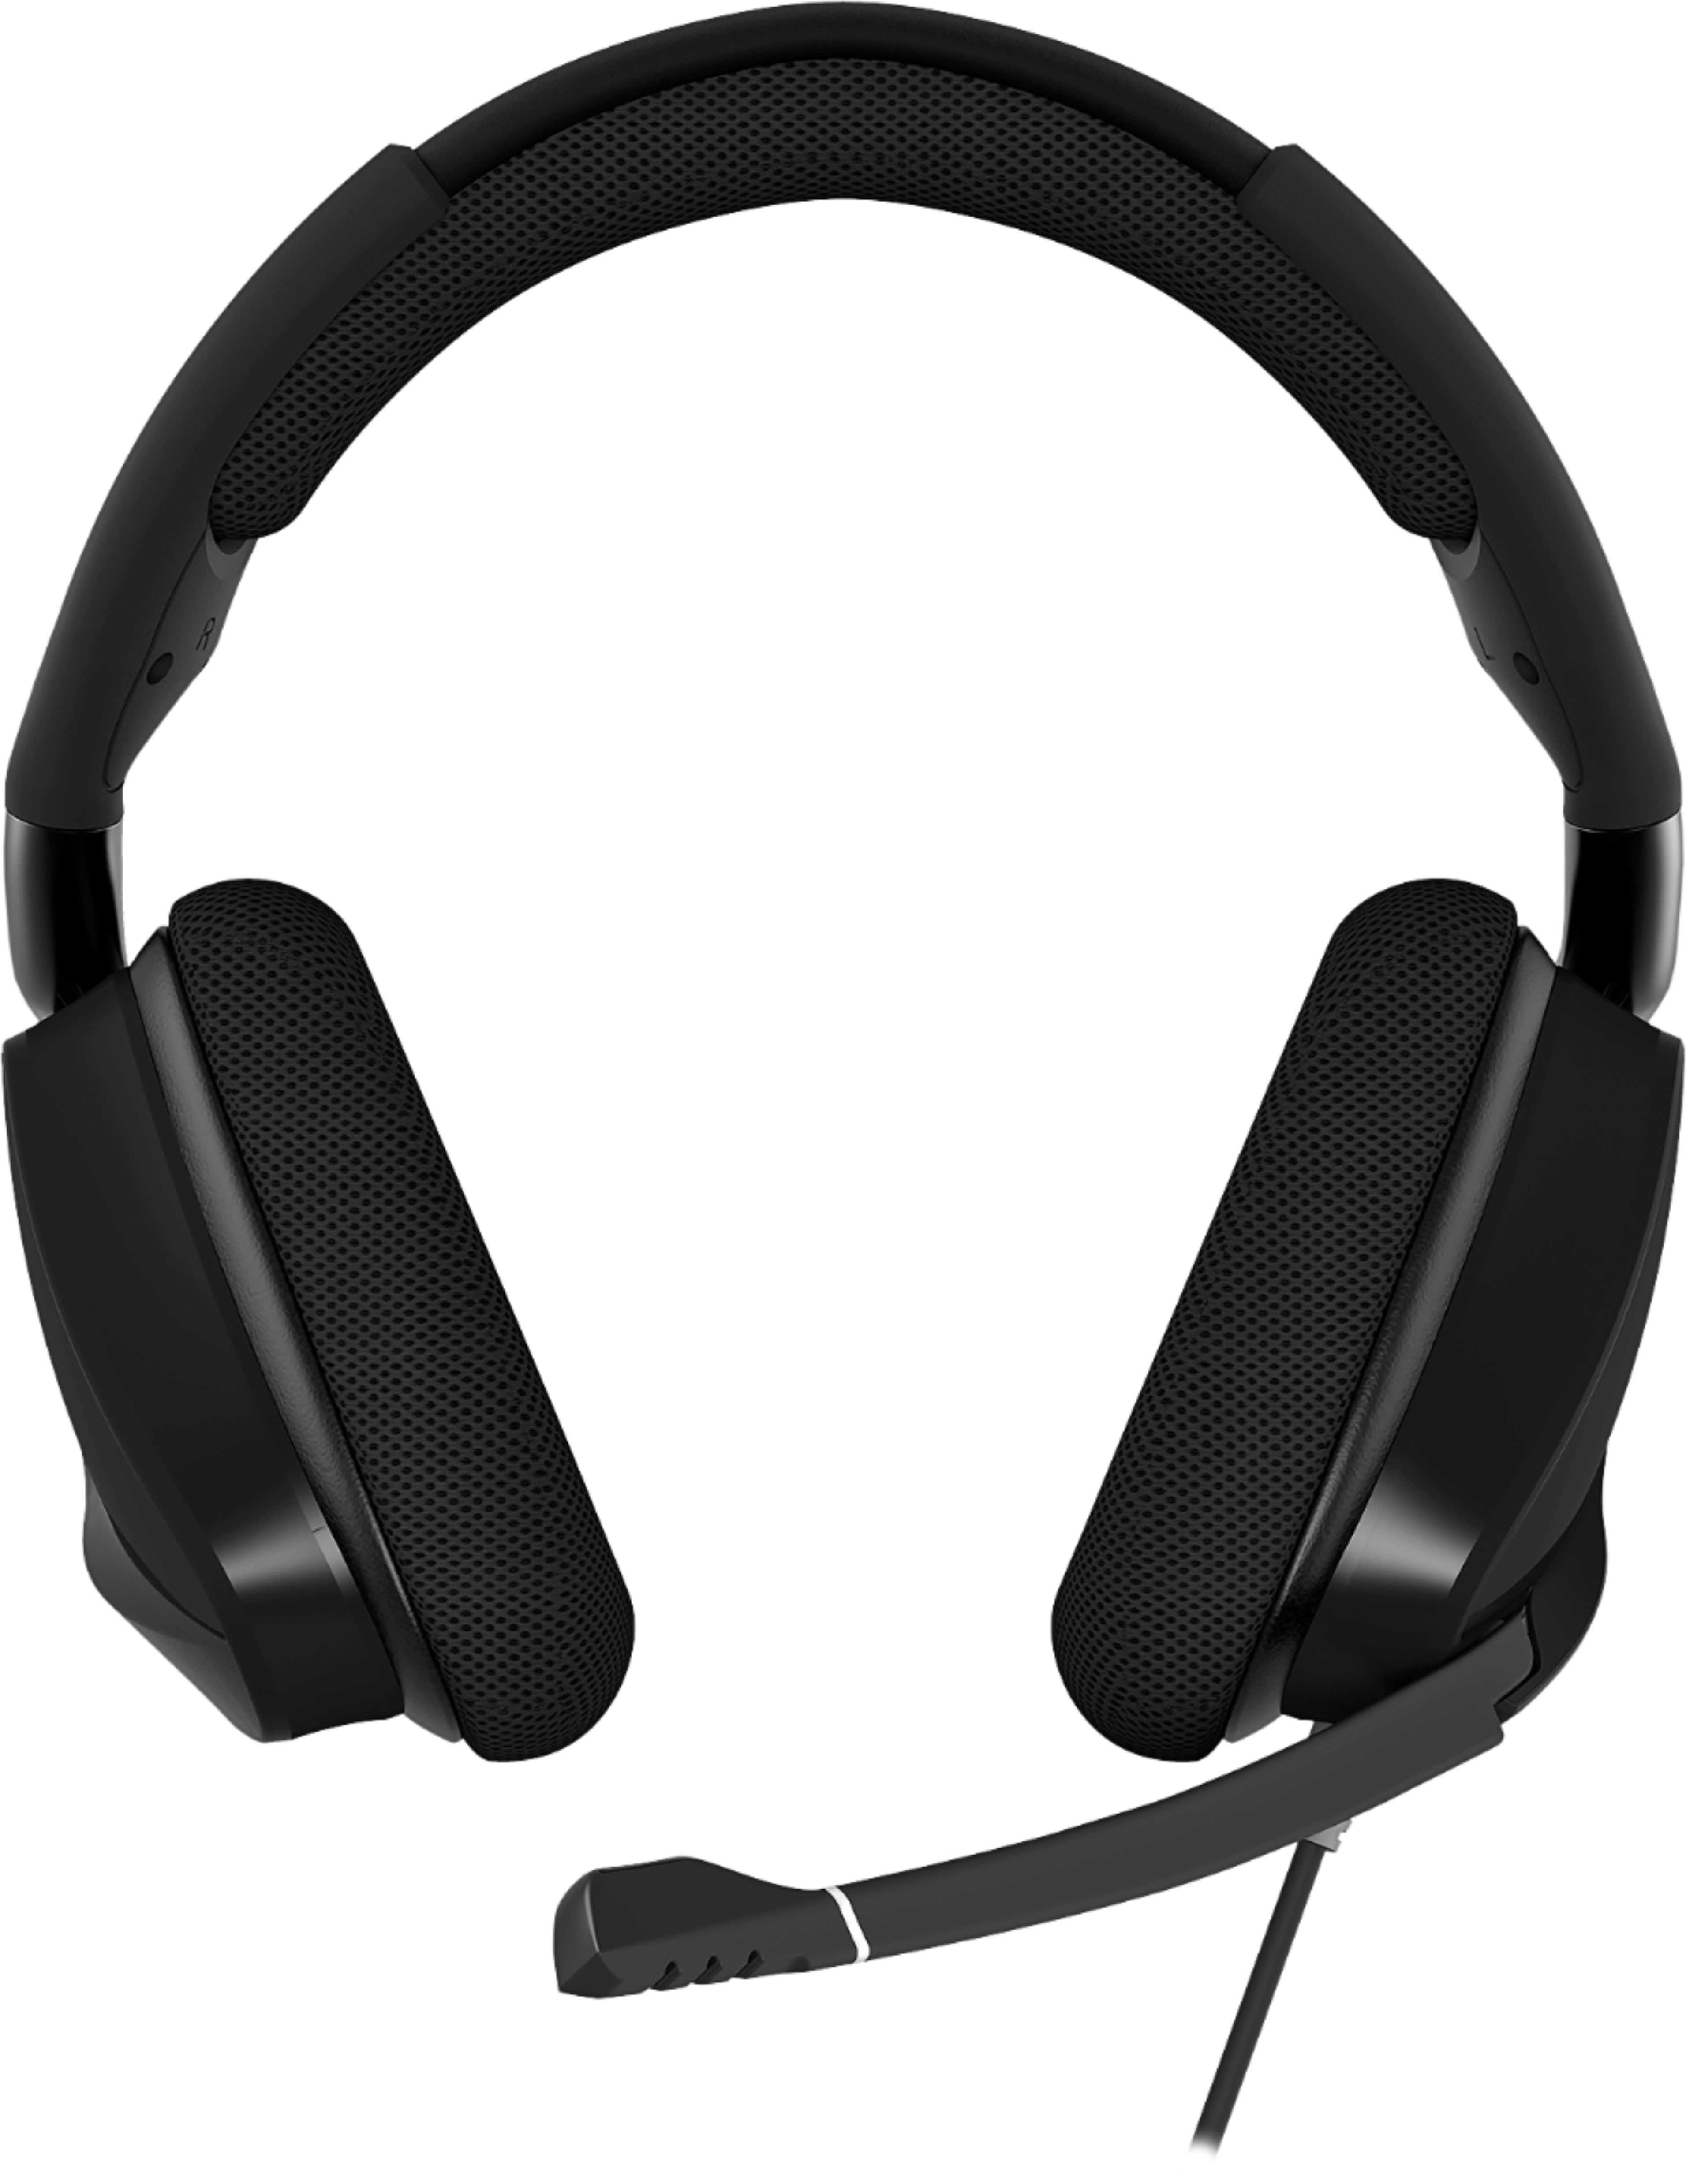 Intiem schelp Gunst Best Buy: CORSAIR Gaming VOID PRO RGB USB Wired Dolby 7.1 Surround Sound  Gaming Headset Carbon black CA-9011154-NA